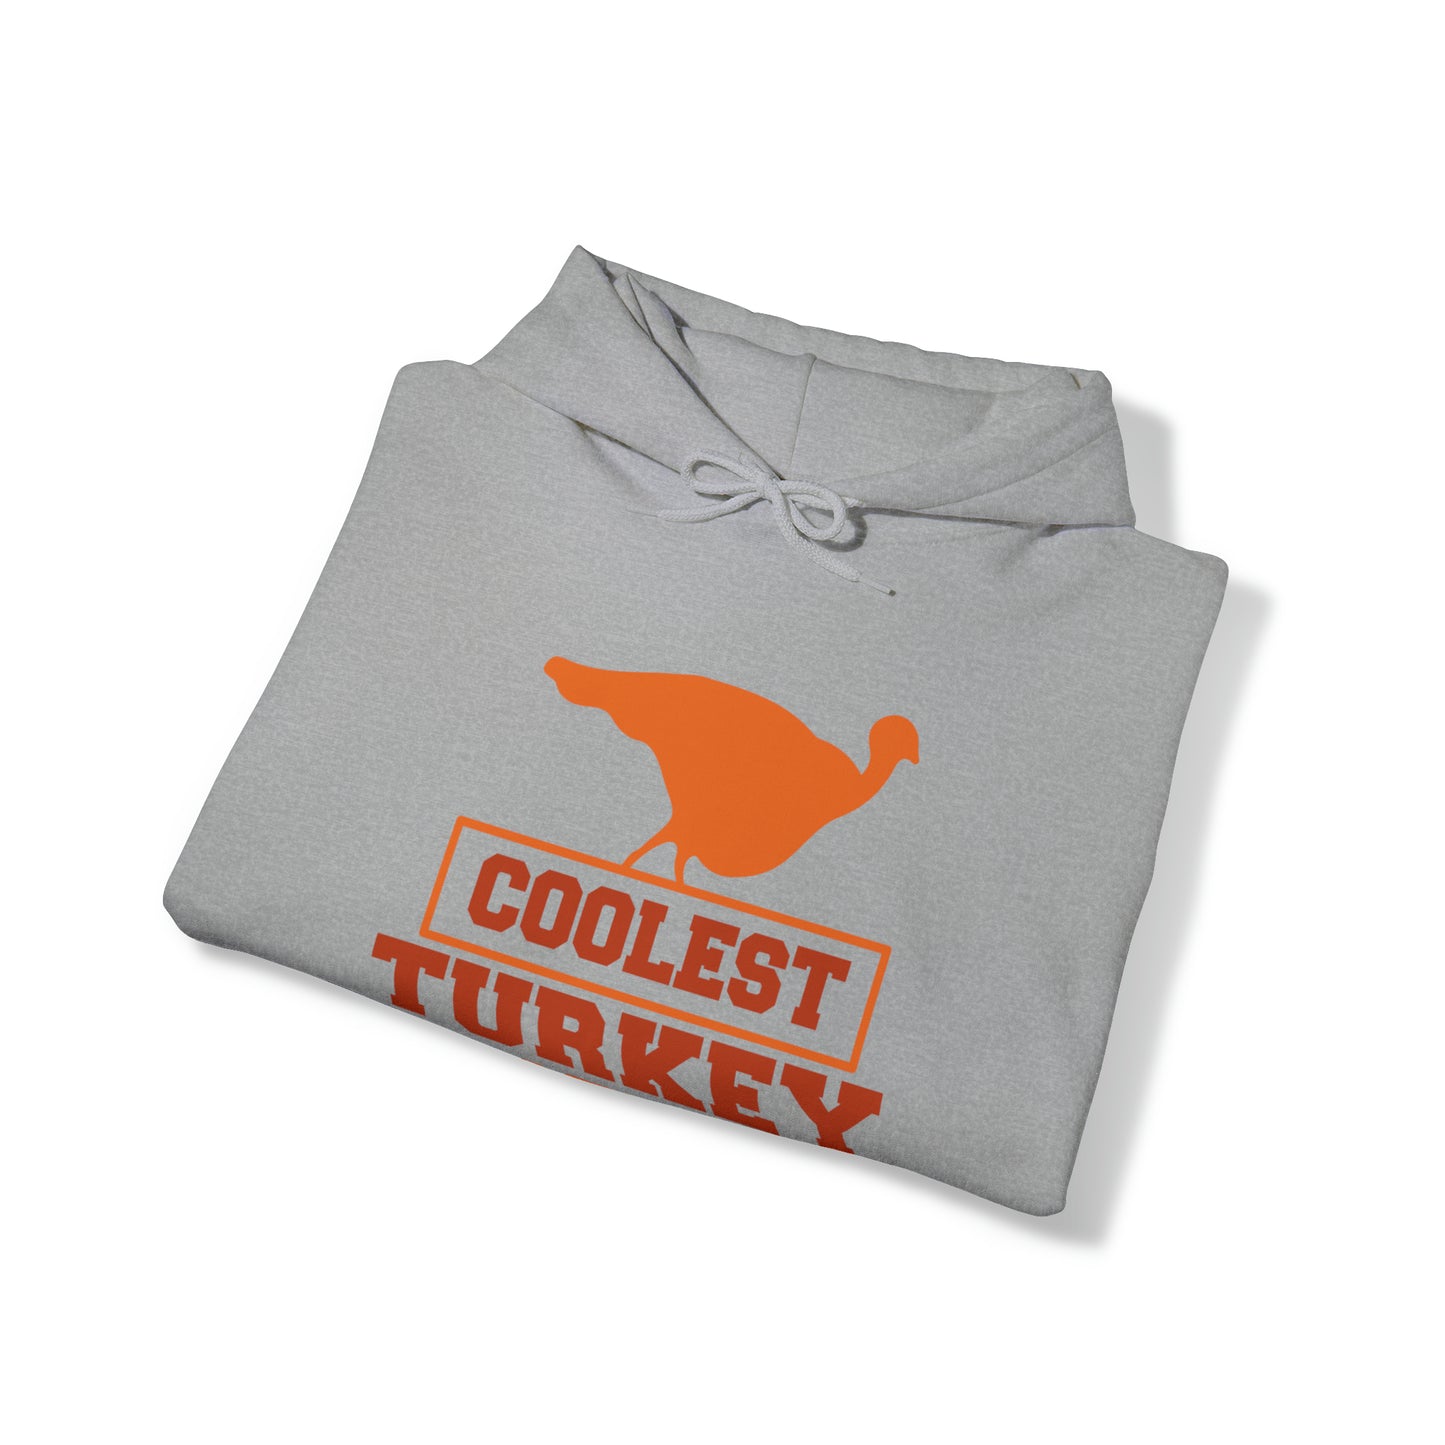 Coolest Turkey Unisex Hooded Sweatshirt image